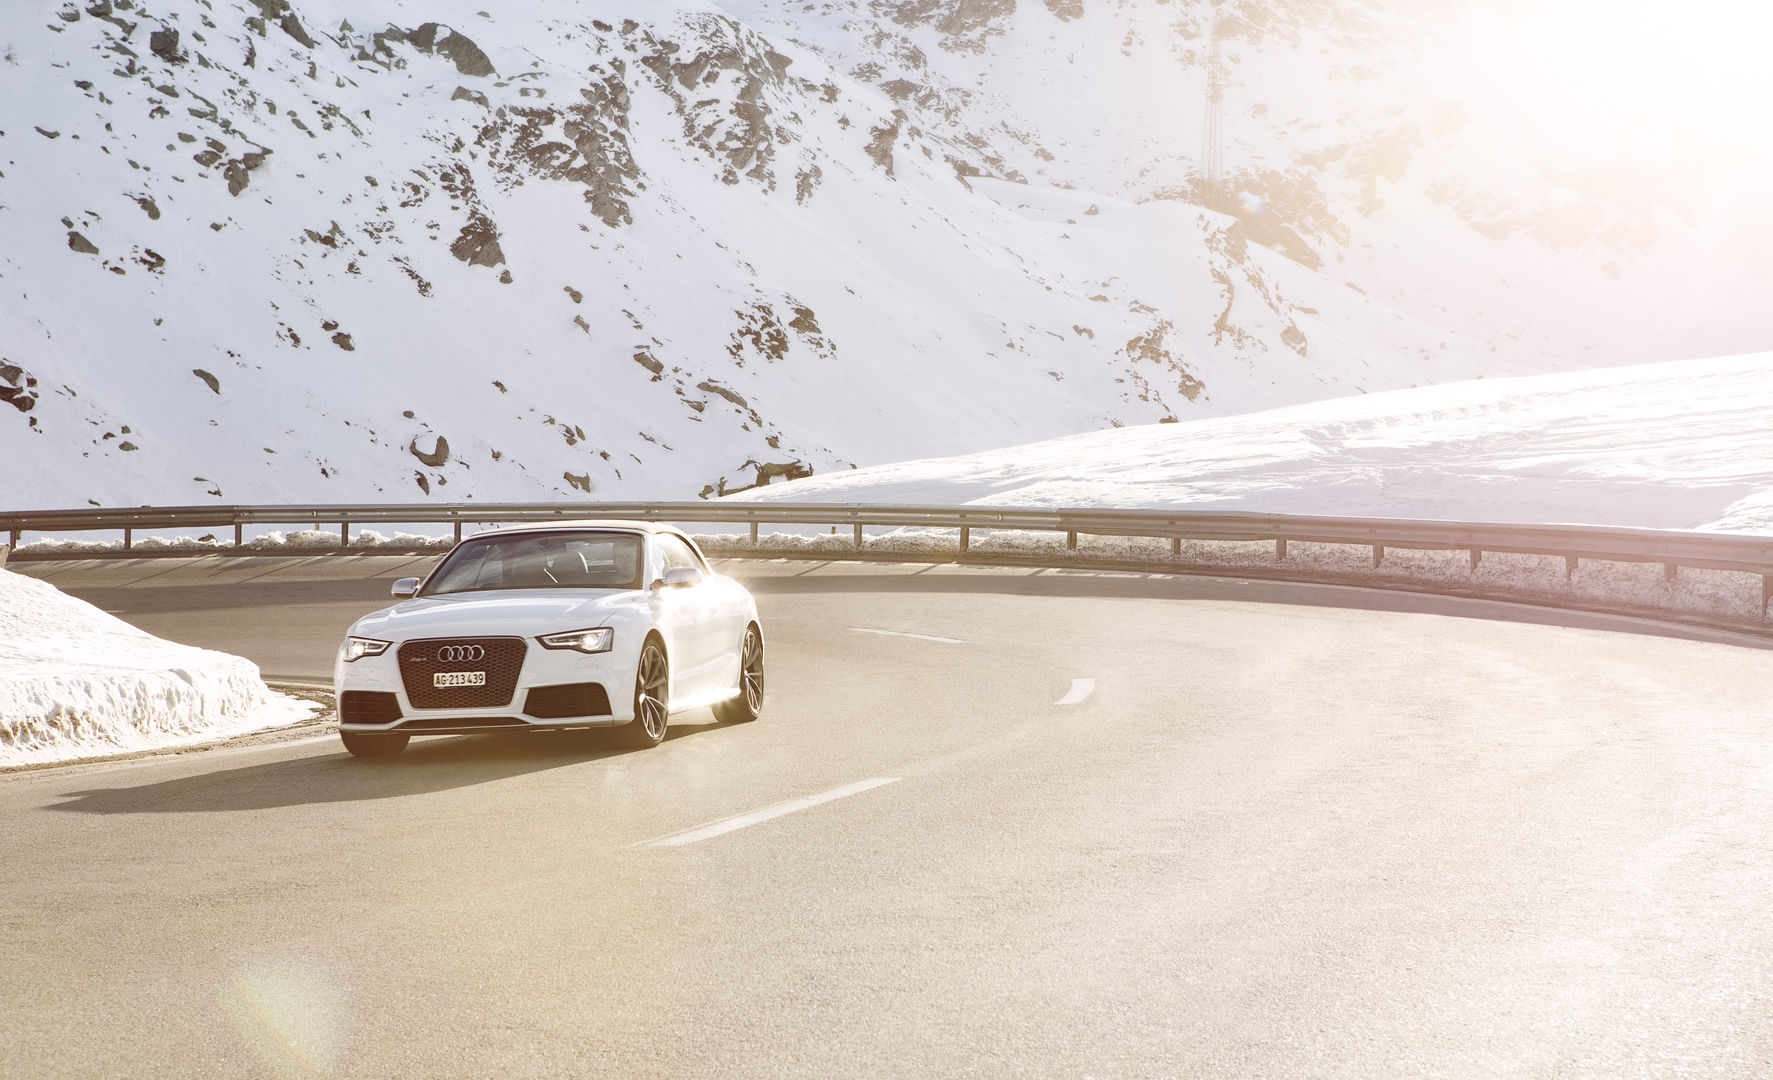 Sonnenschein trifft Schneelandschaft: Das Audi RS 5 Cabriolet ist für beides gerüstet.